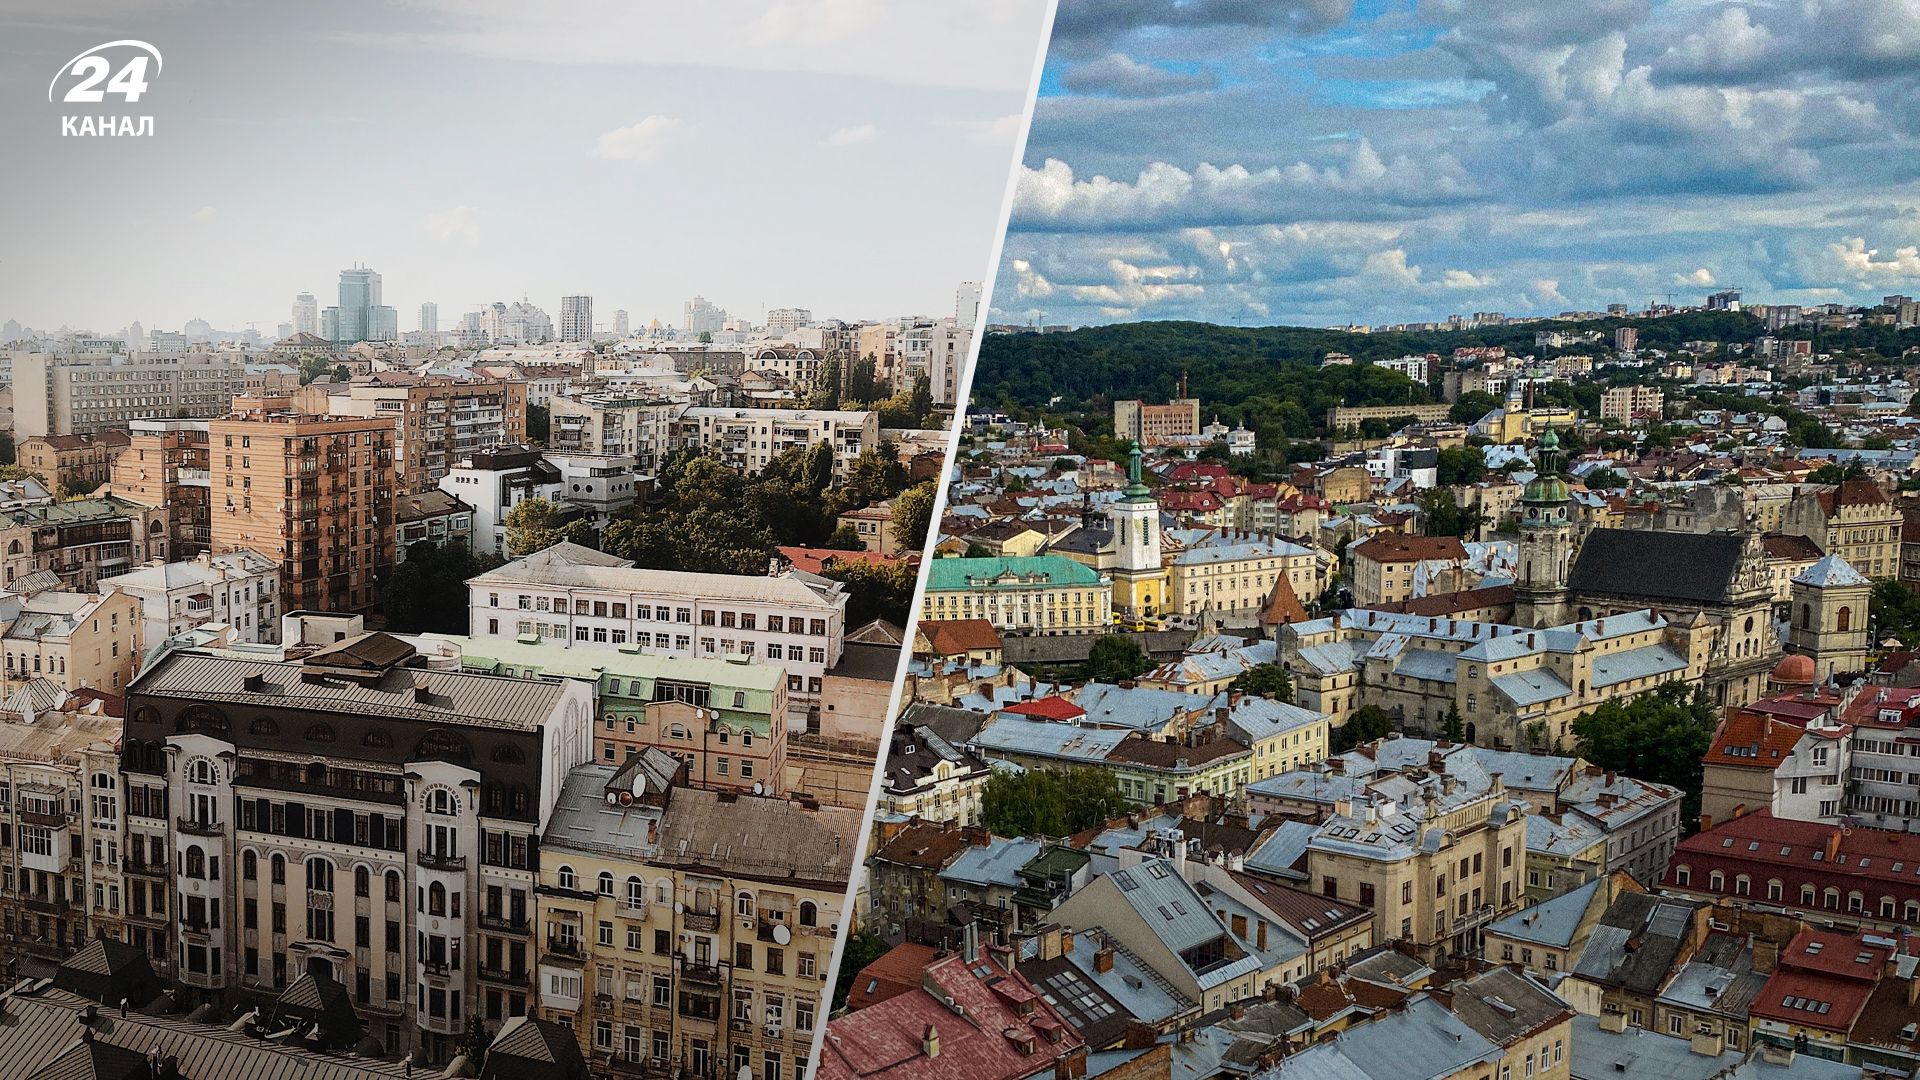 Аренда 1-комнатной квартиры во Львове на 50% дороже, чем в Киеве